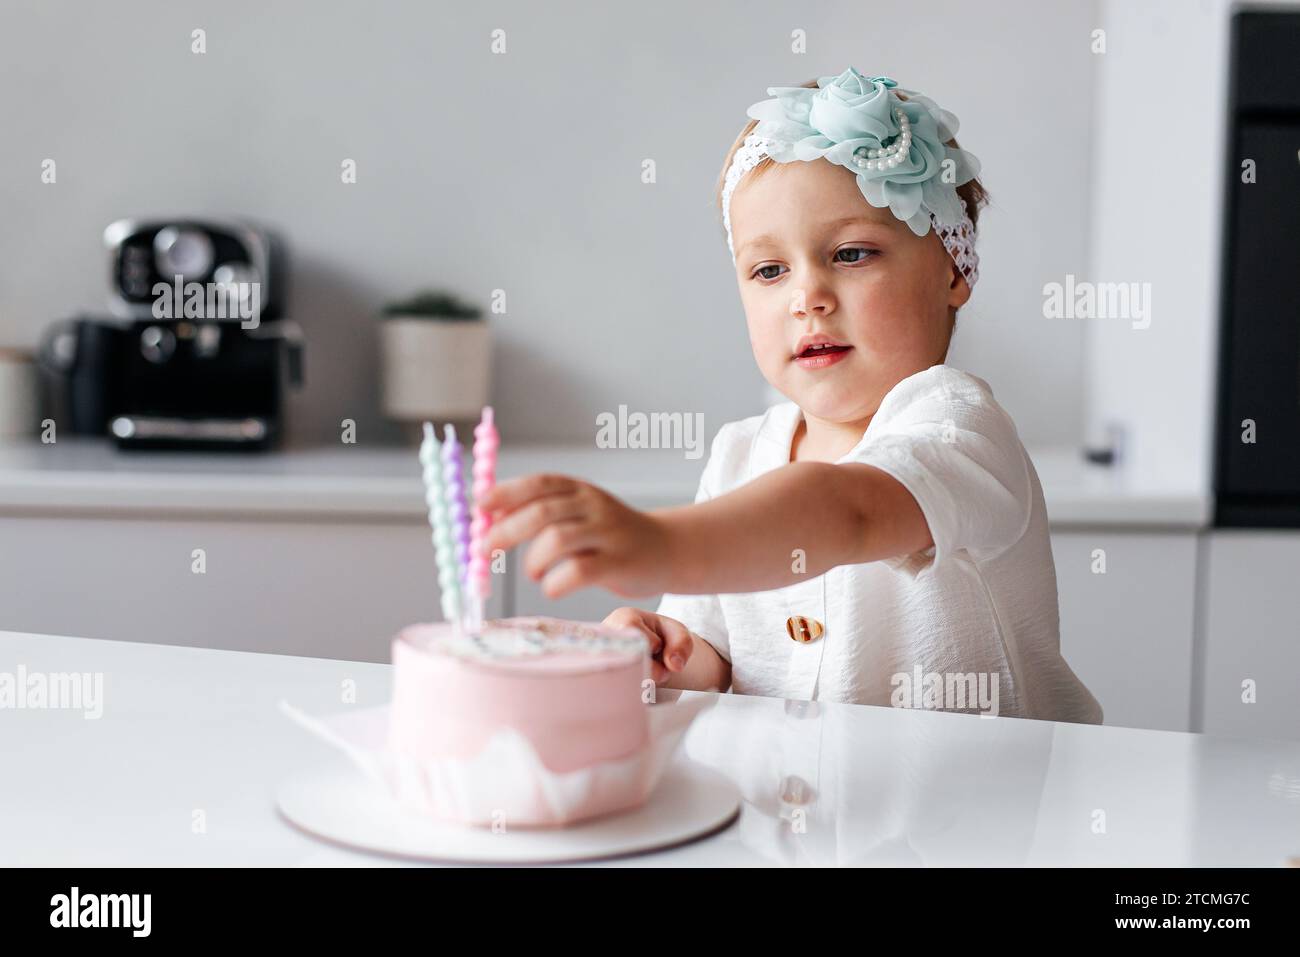 feliz cumpleaños niña de 2 años con vestido rosa. pastel blanco con velas y  rosas. Decoración de cumpleaños con globos de color blanco y rosa y c  Fotografía de stock - Alamy